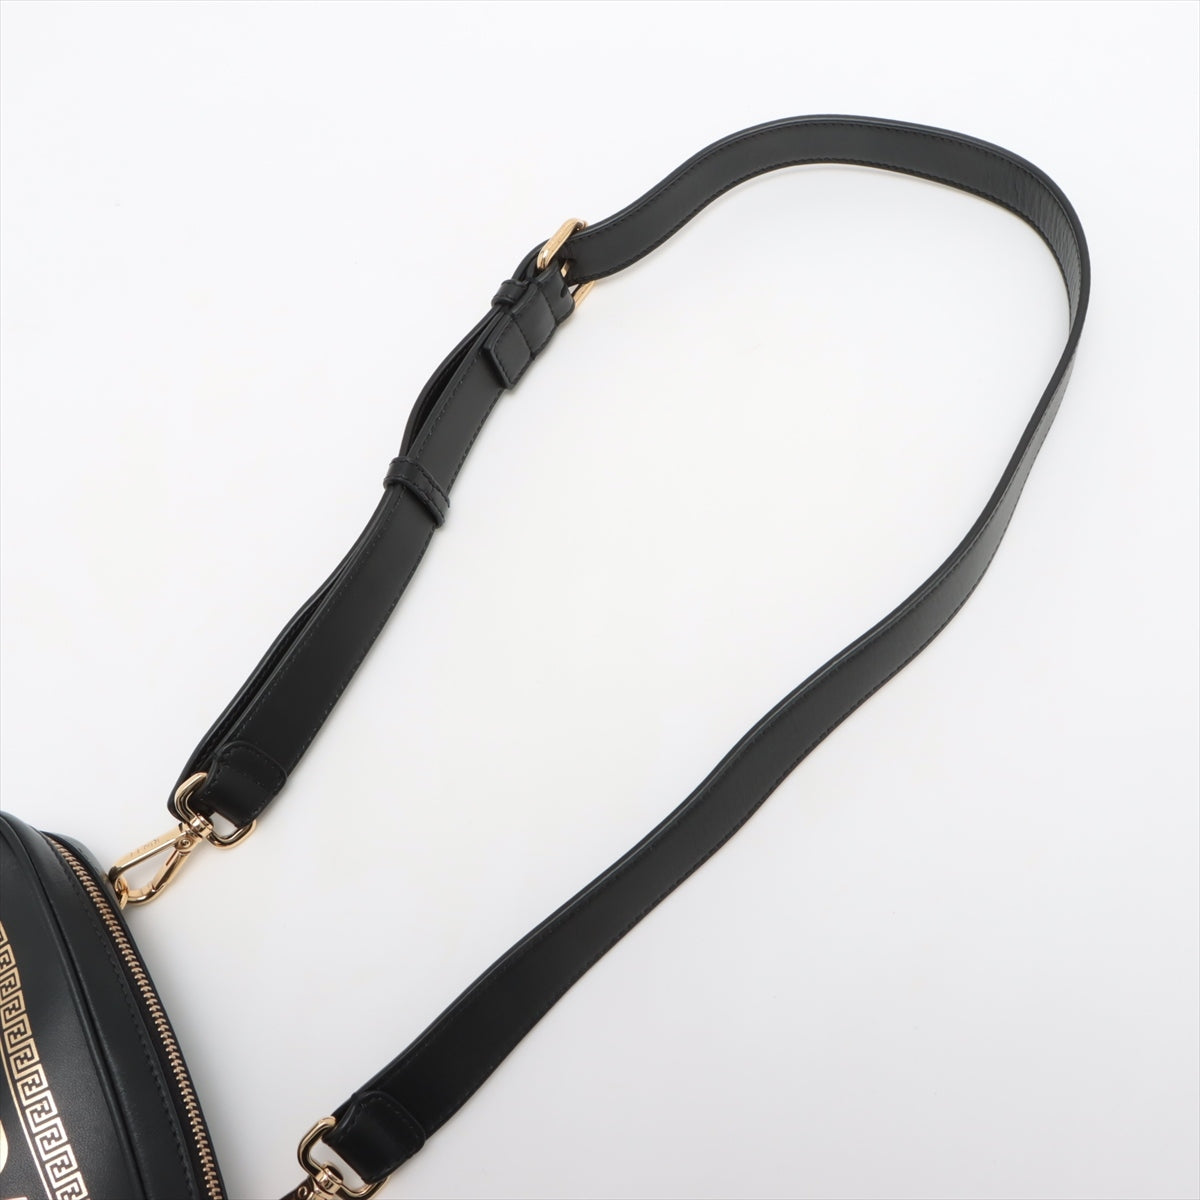 Fendi x Versace Fender Choi Camera Bag Leather Shoulder Bag Black 1006611